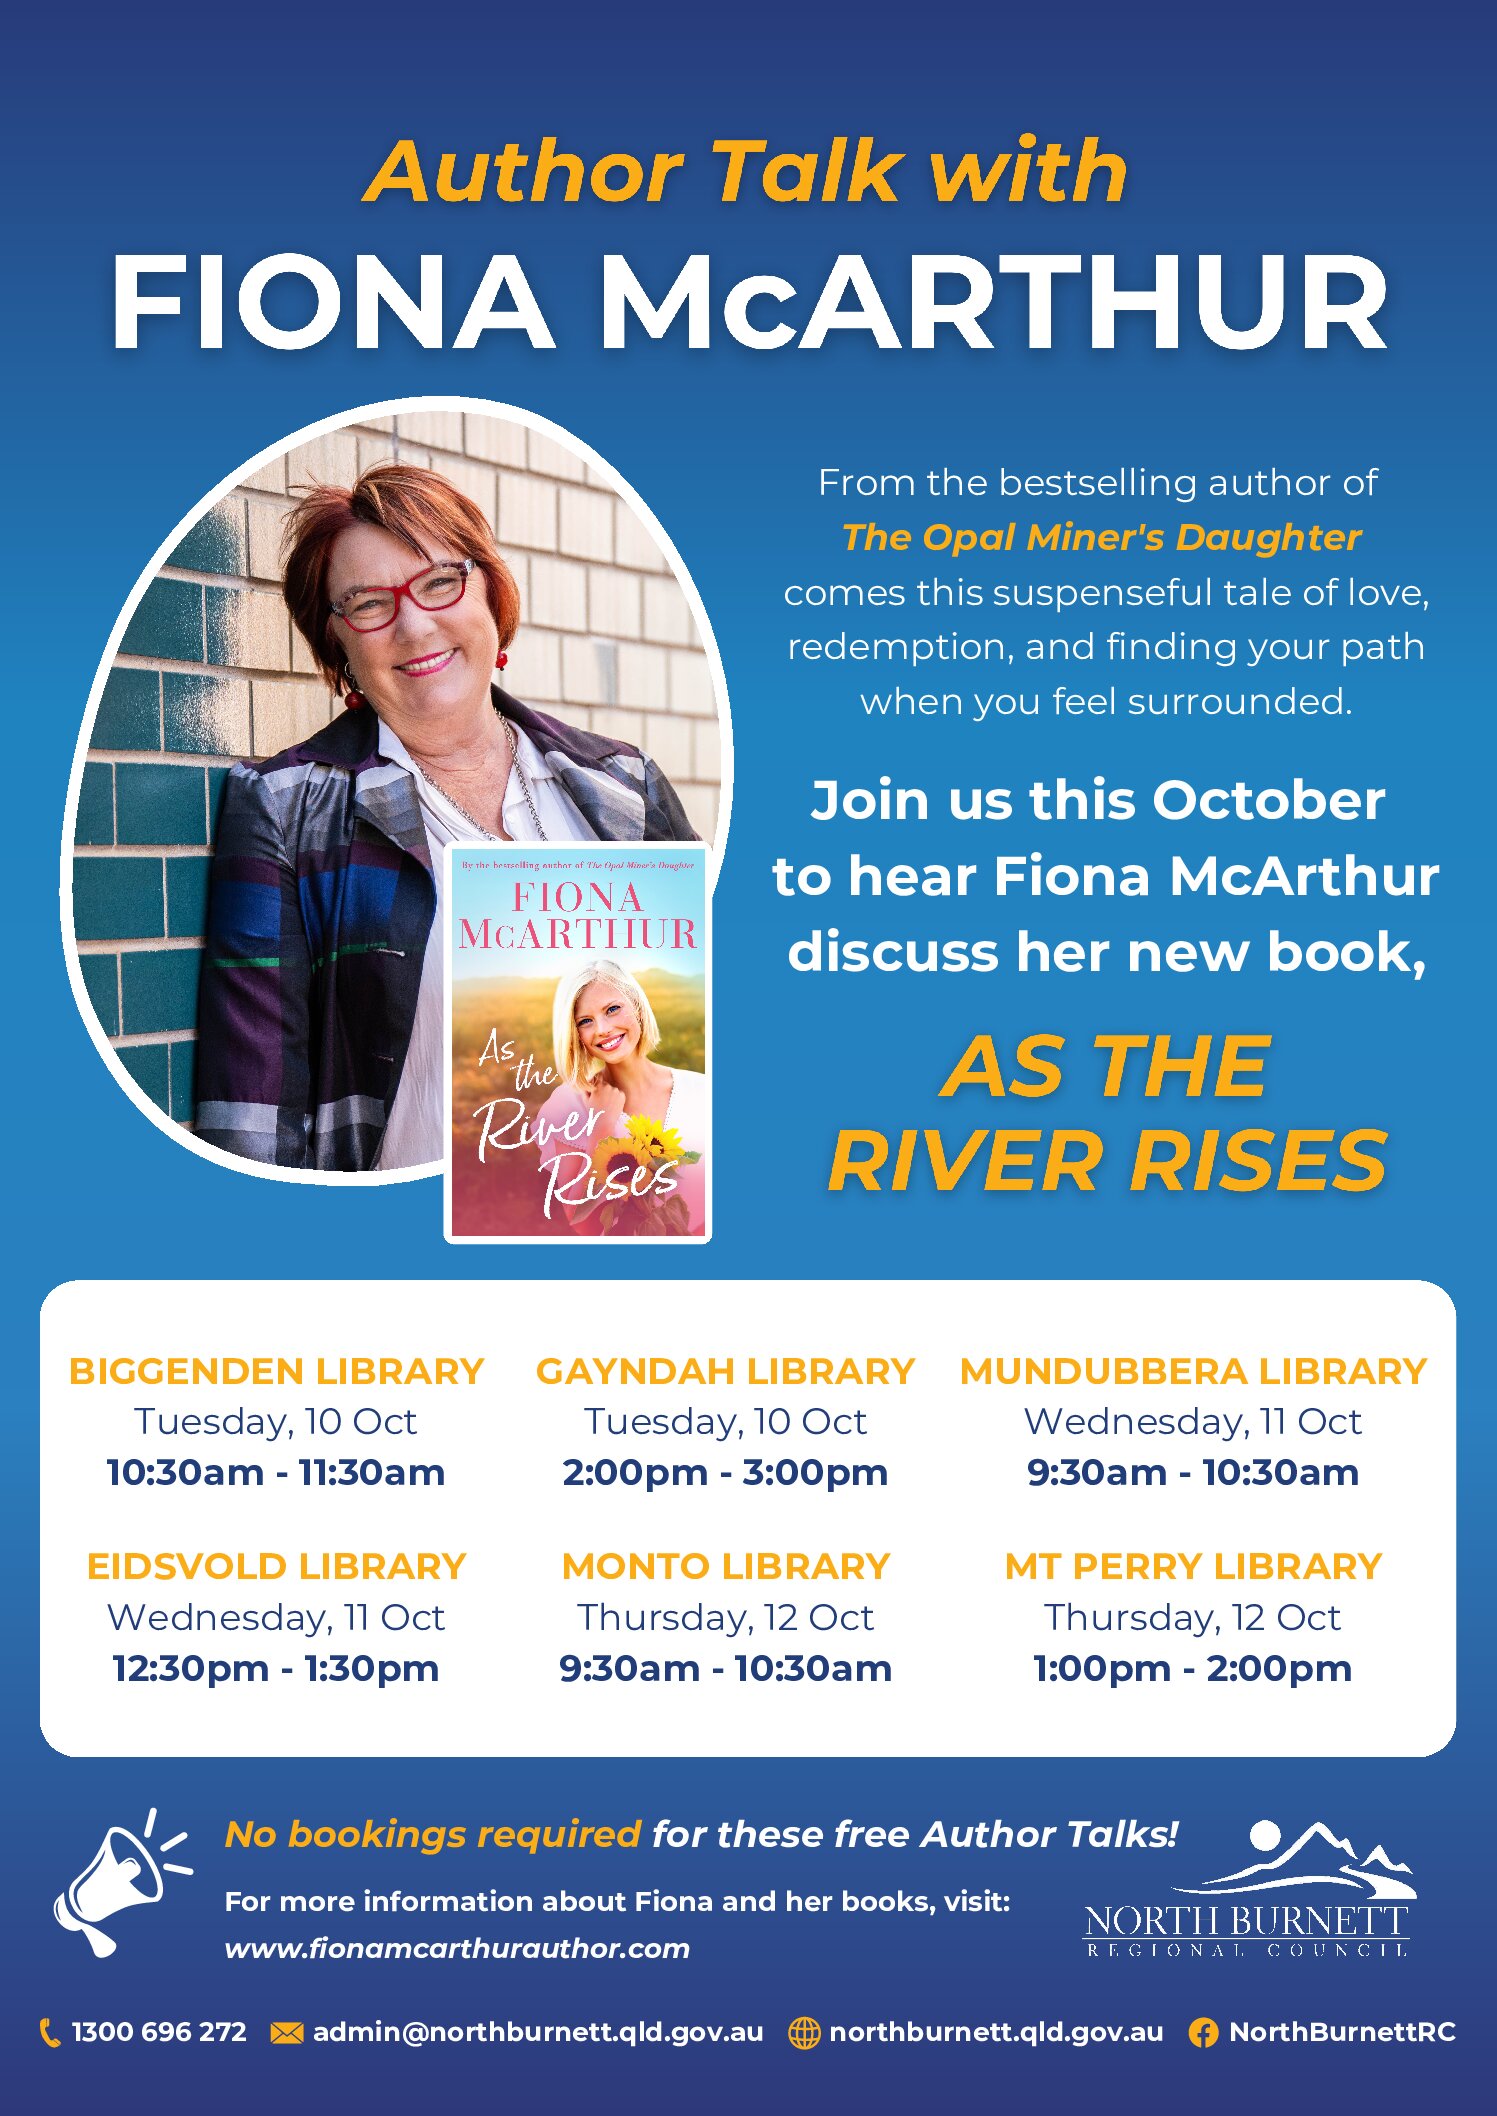 Mt Perry – Fiona McArthur Author Talk